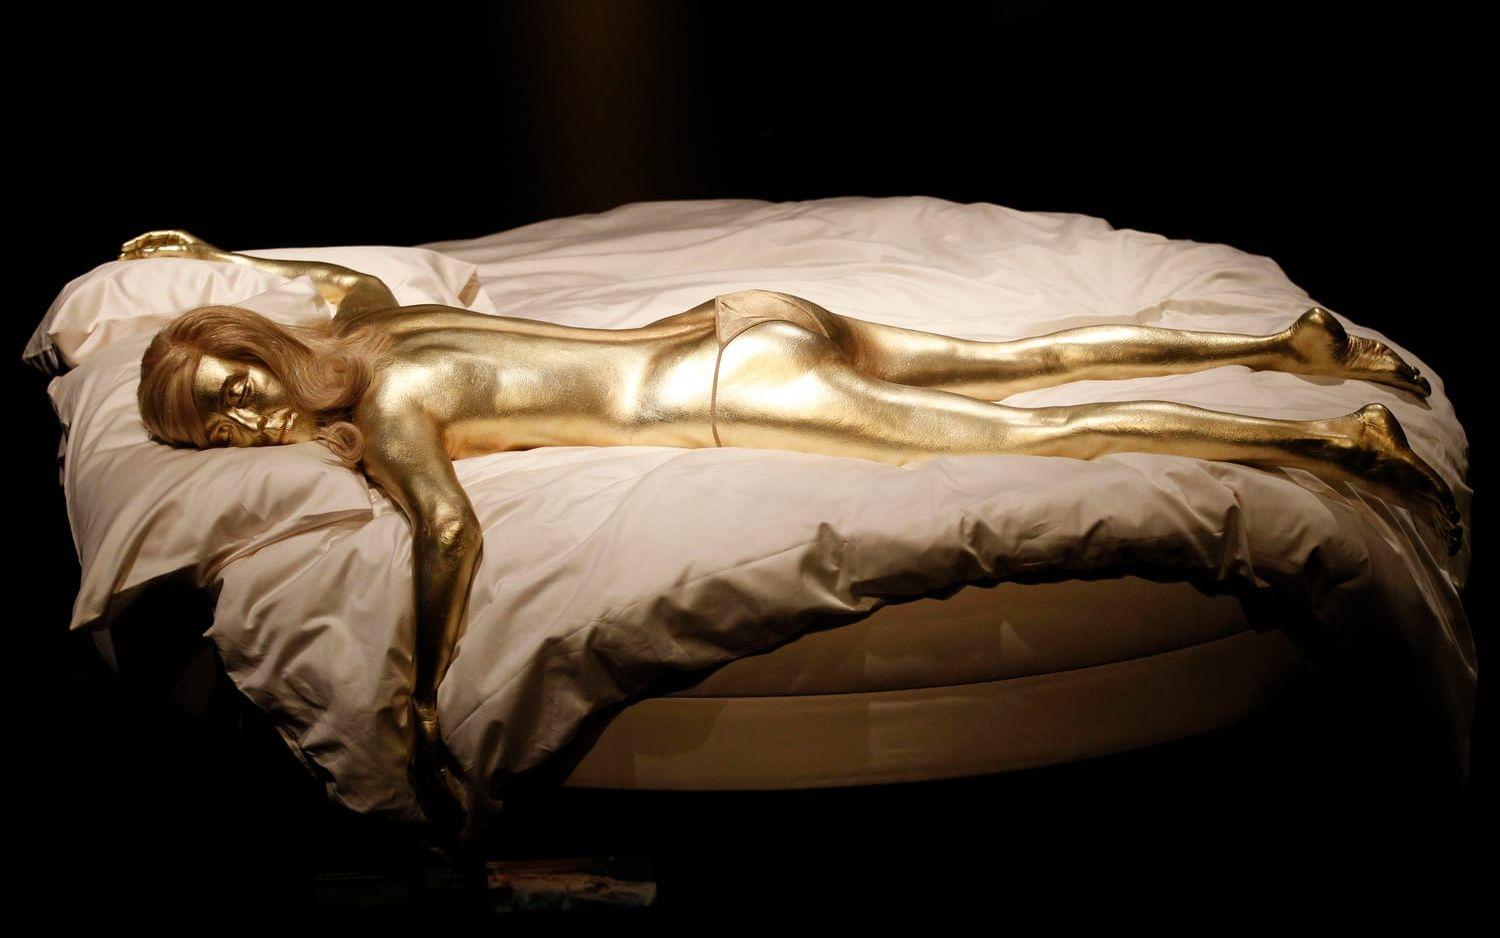 En docka föreställande Jill Mastersons guldsprayade kropp i ”Goldfinger” fanns med på en utställning i London 2012. Bild: Sang Tan/AP